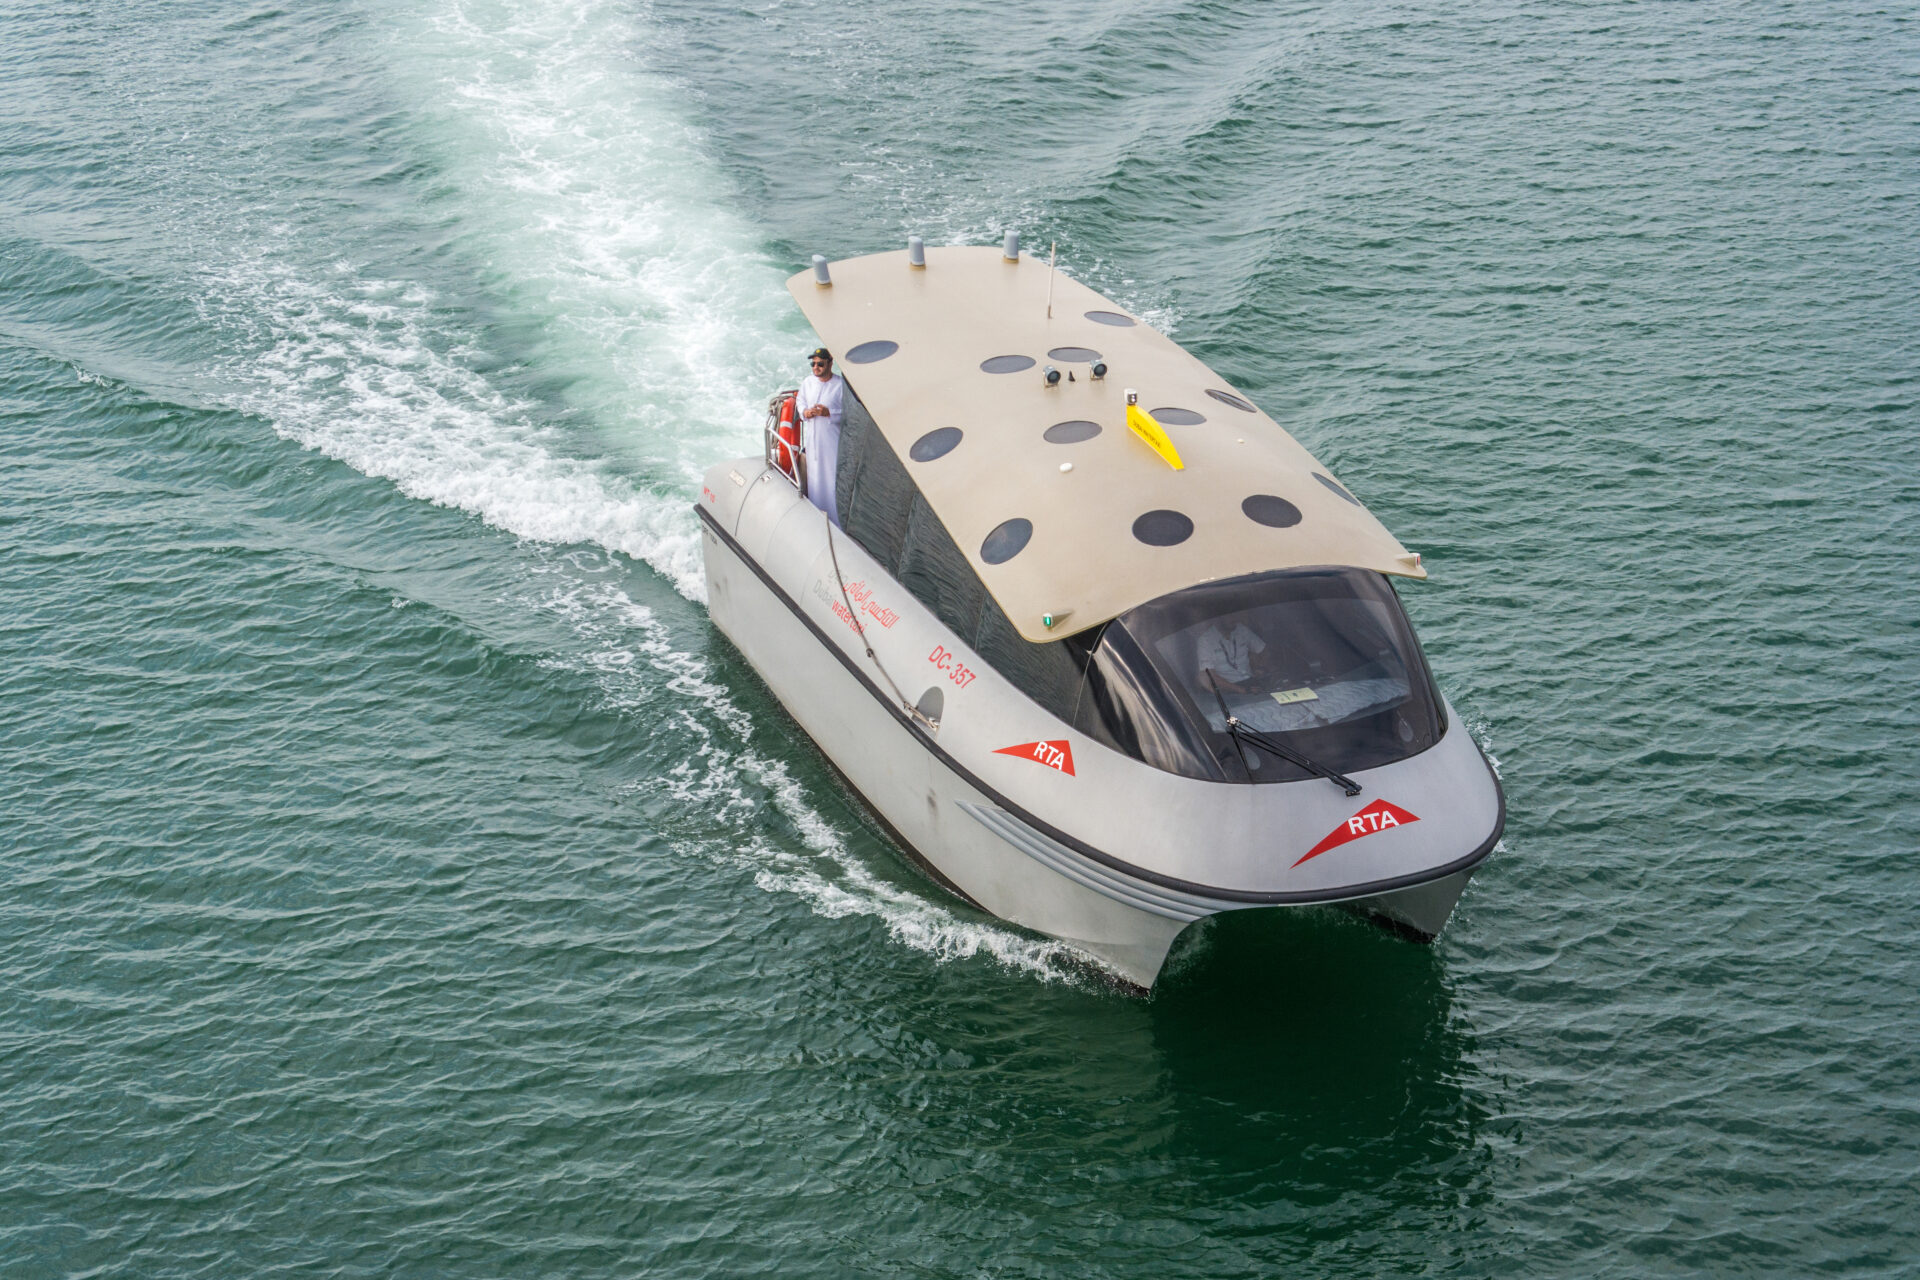 Dubai Water Taxi - RTA private boat